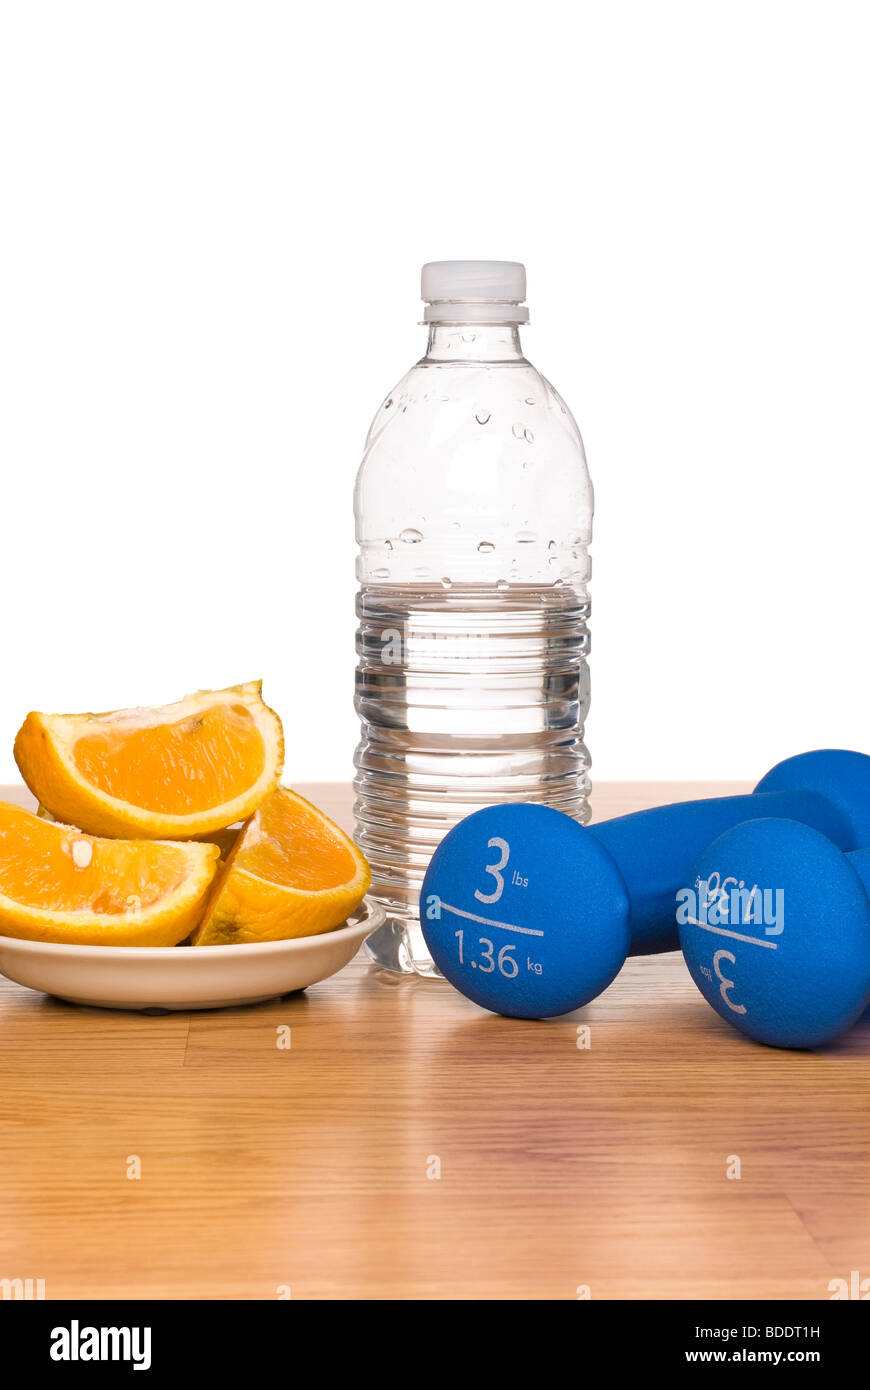 Une image conceptuelle de modes de vie sains, notamment l'équipement d'exercice, une bouteille d'eau et une orange en tranches. Banque D'Images